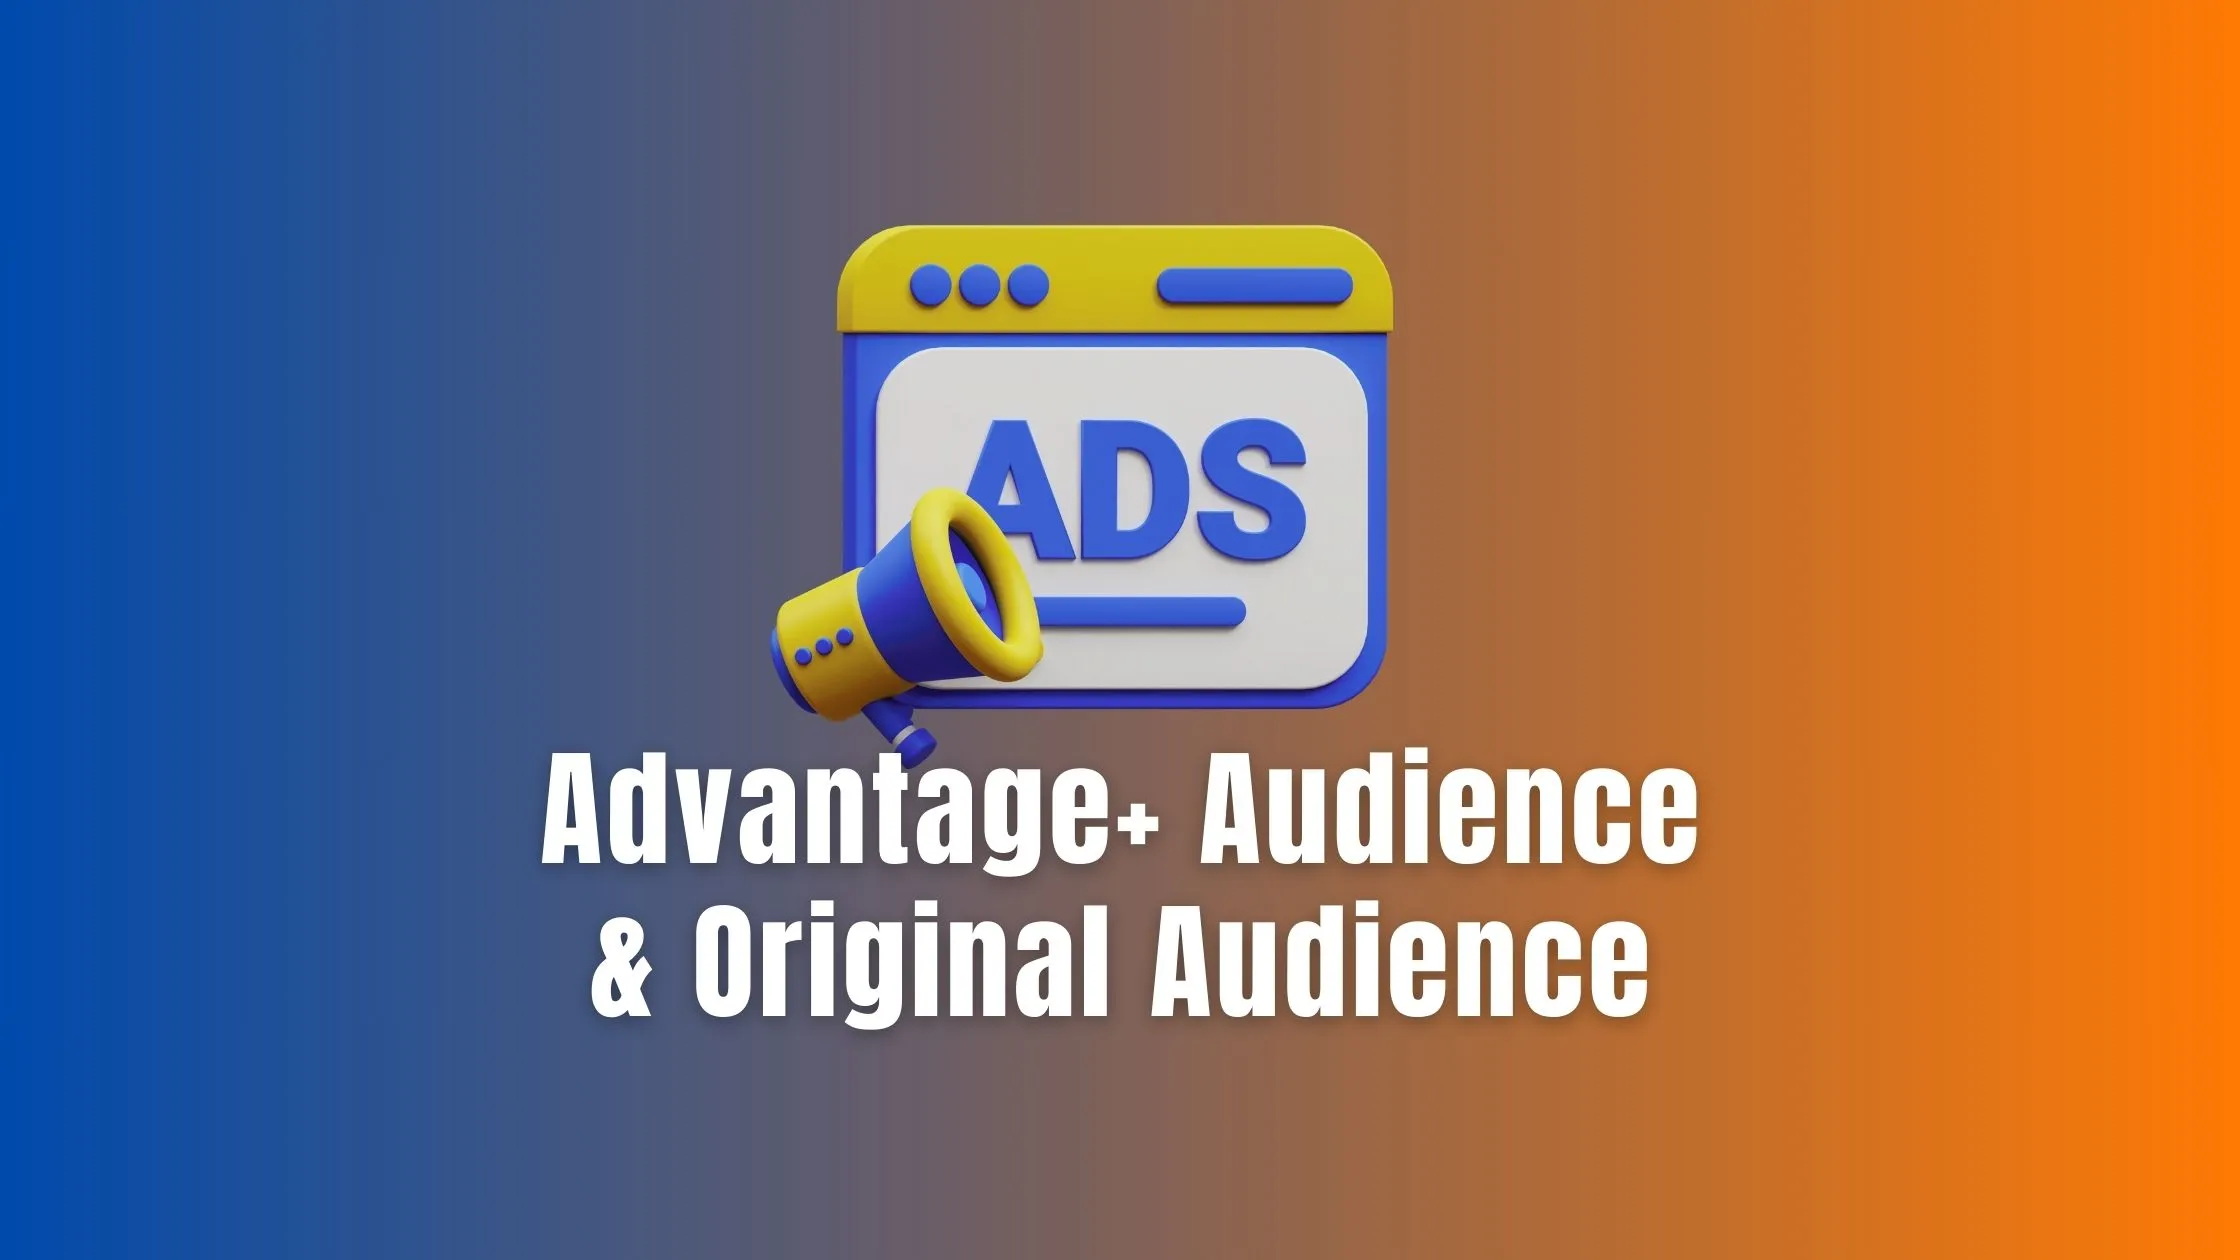 Advantage+ Audience